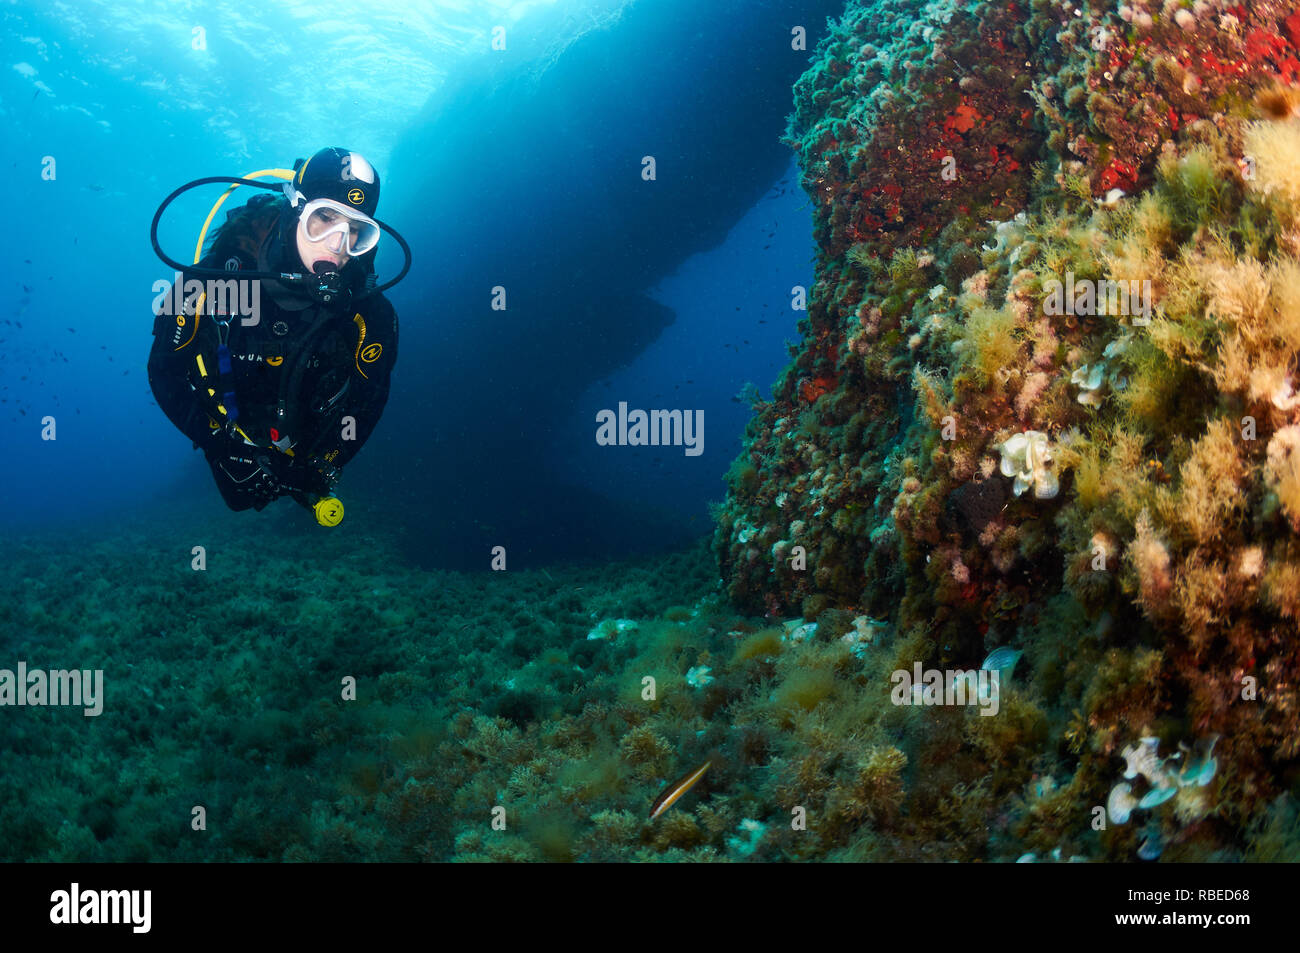 Plongeur féminin équipé d'un équipement de plongée Aqua Lung près d'une arche sous-marine dans le parc naturel de ses Salines (Formentera, mer Méditerranée, Espagne) Banque D'Images